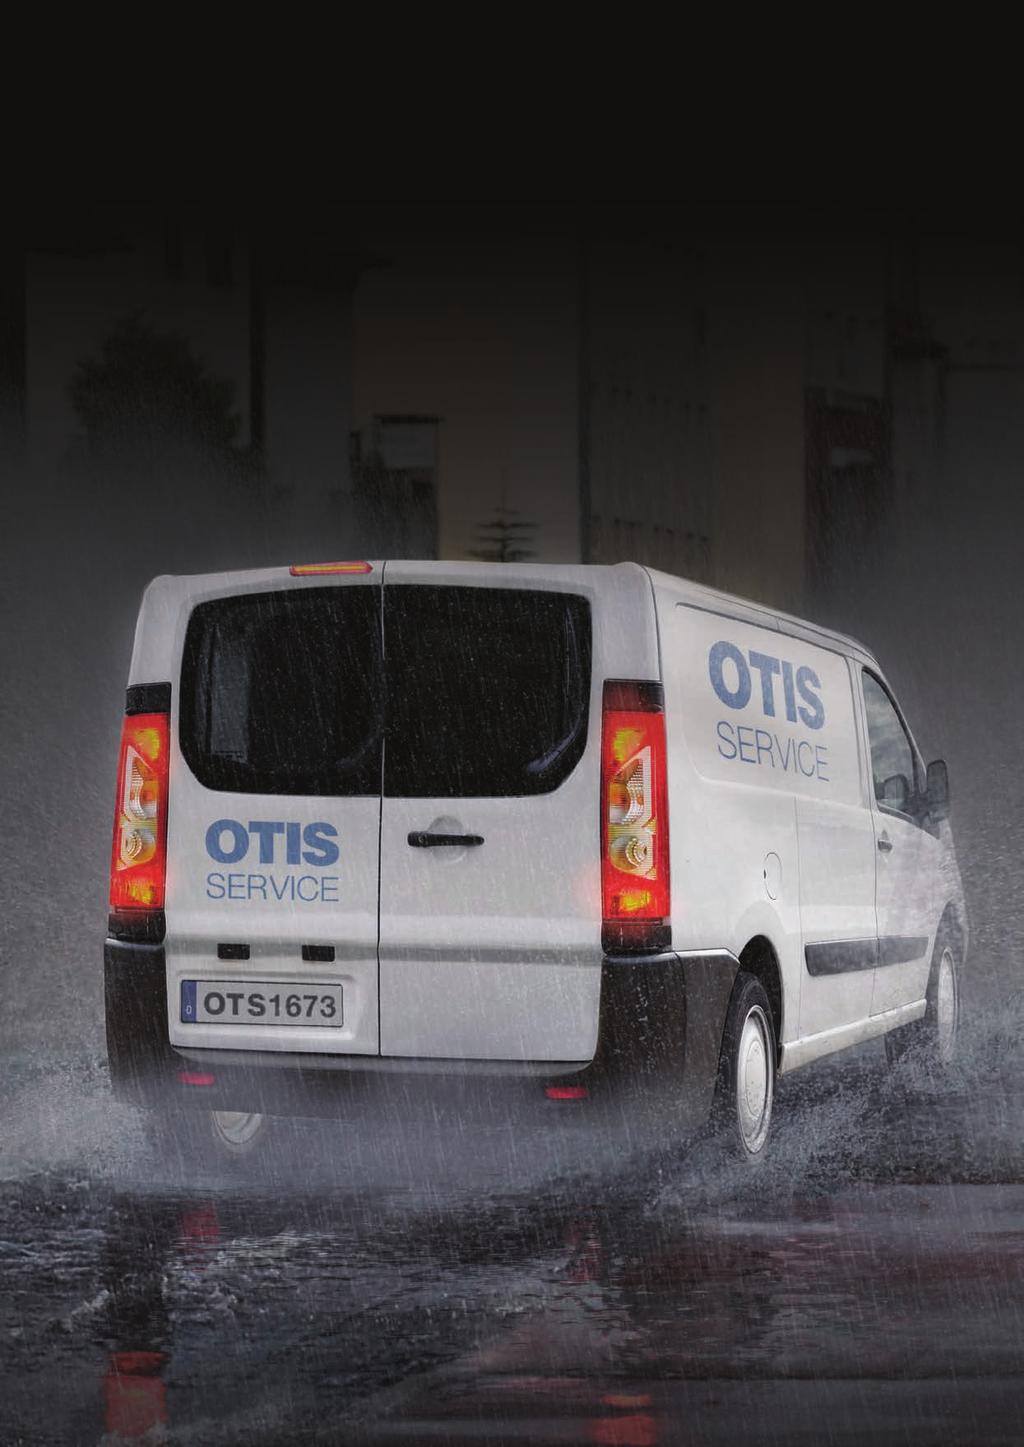 SPOLEHLIVOST A SERVIS SPOLEHLIVOST A SERVIS Spolehlivost a servis Spolehlivý servis Programy údržby společnosti Otis jsou založeny na proaktivním přístupu k servisu.